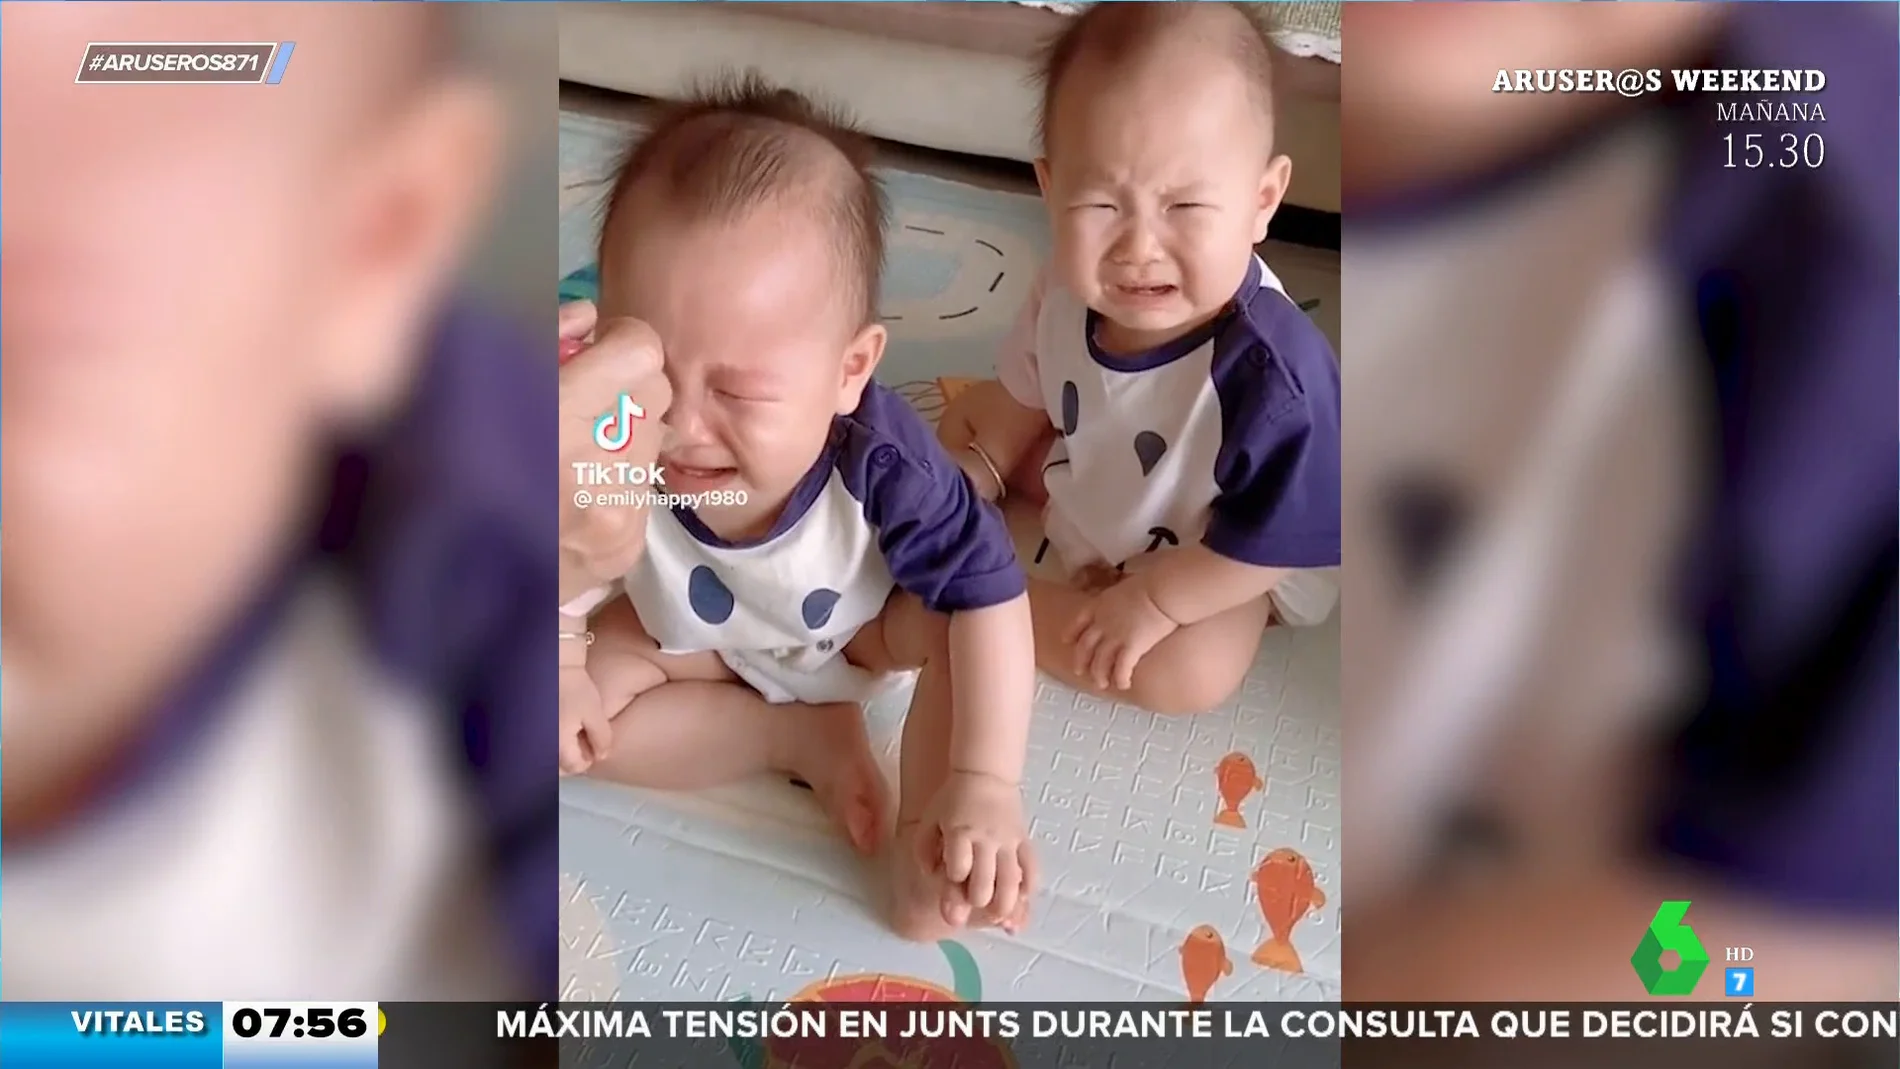 La increíble conexión entre gemelos: el vídeo viral de estos hermanos que se contagian el llanto